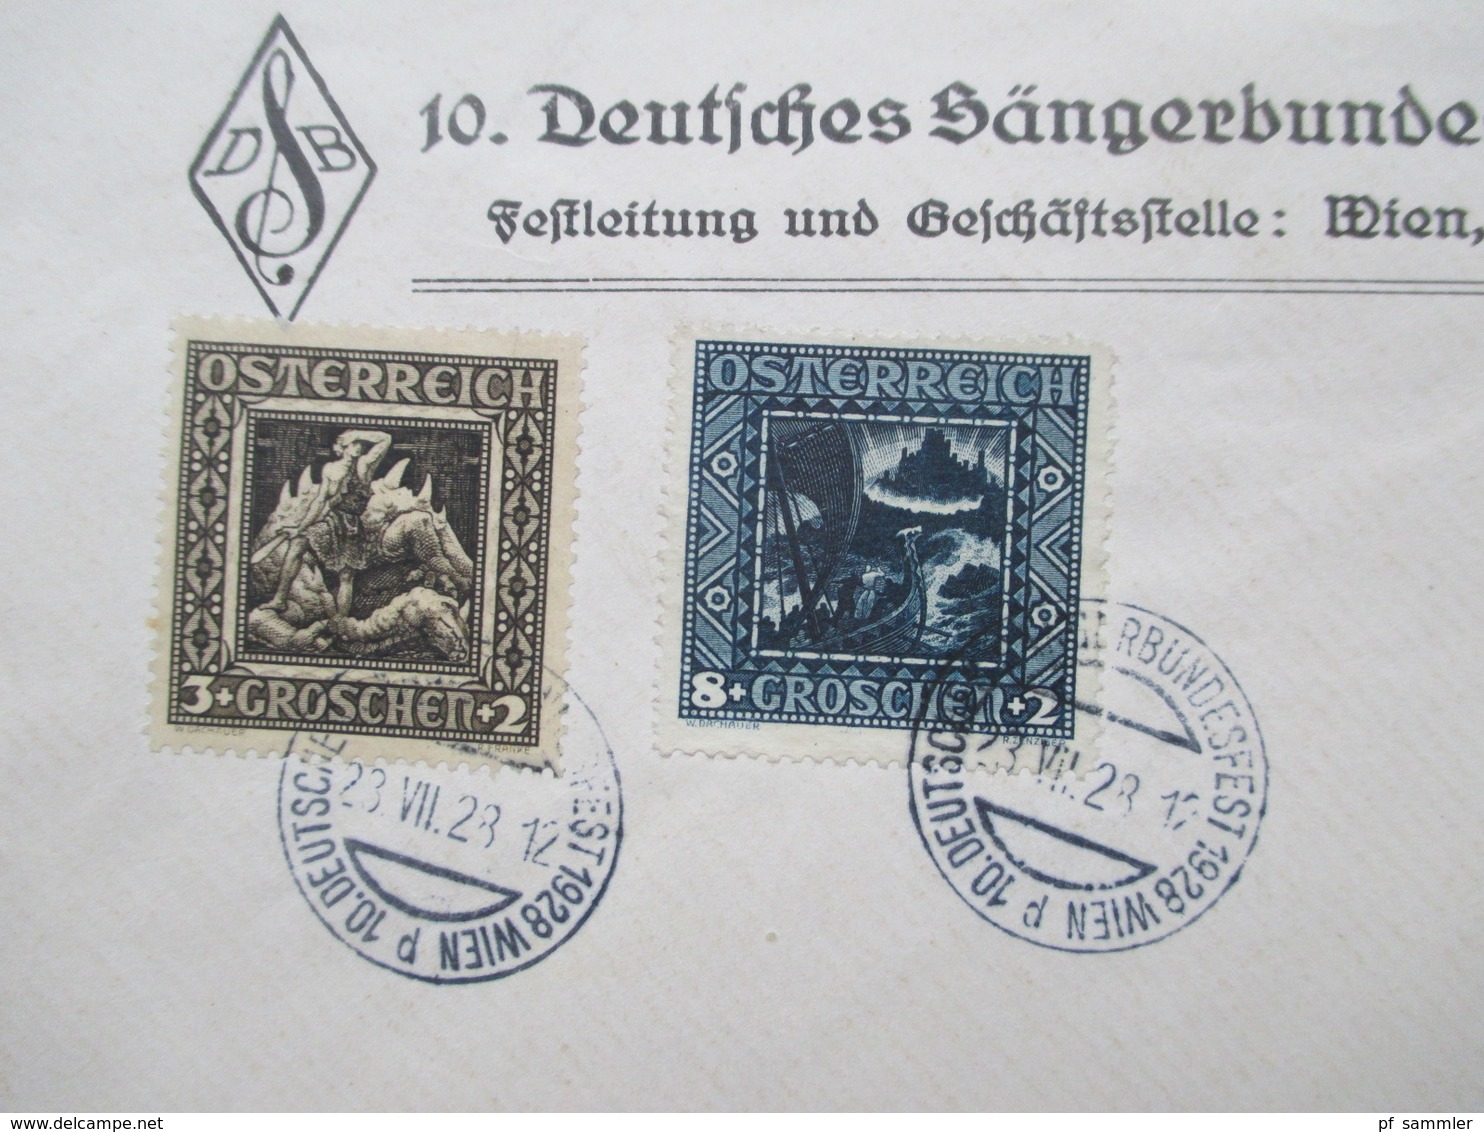 Österreich 1926 Nibelungensage Nr. 488 - 493 Satz auf 2 Umschlägen 10. Deutsches Sängerbundesfest Wien 1928